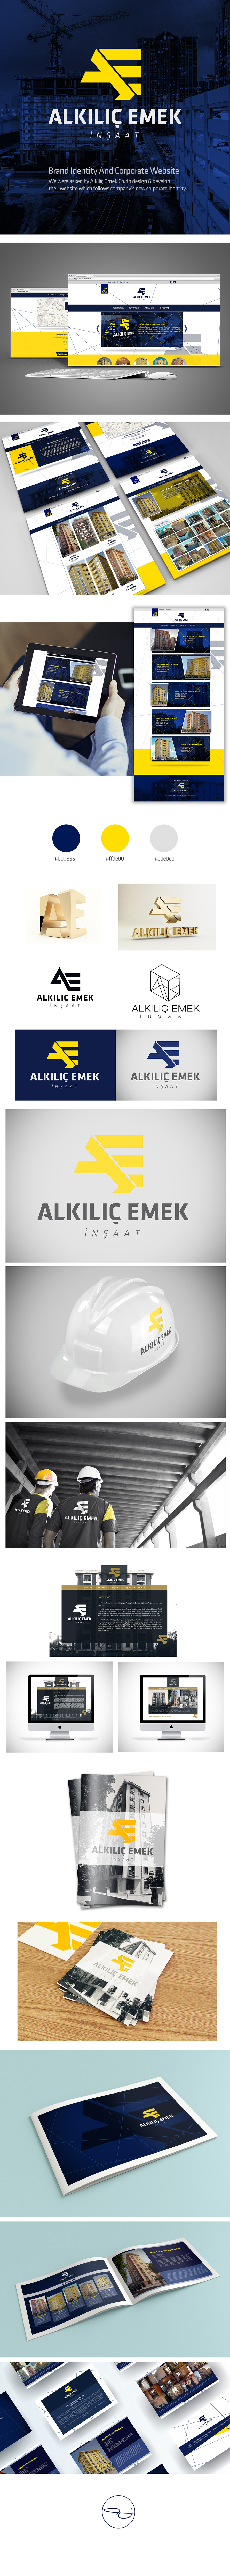 alkilicemek osmanuzun osman Webdesign turkish design inşaat